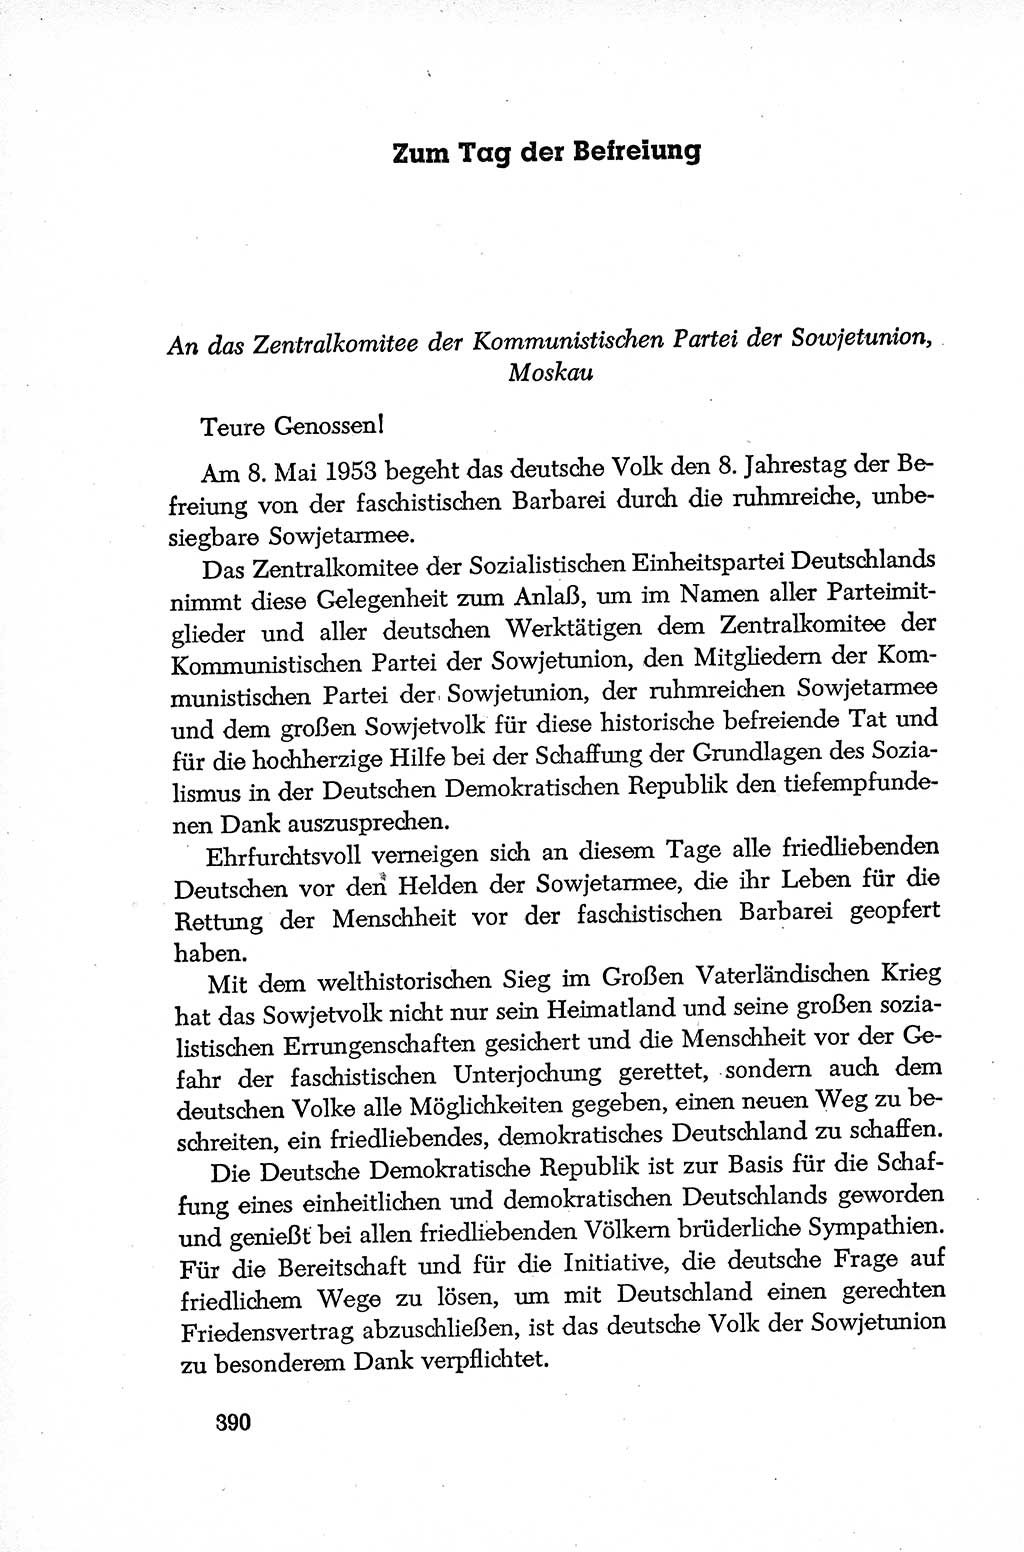 Dokumente der Sozialistischen Einheitspartei Deutschlands (SED) [Deutsche Demokratische Republik (DDR)] 1952-1953, Seite 390 (Dok. SED DDR 1952-1953, S. 390)